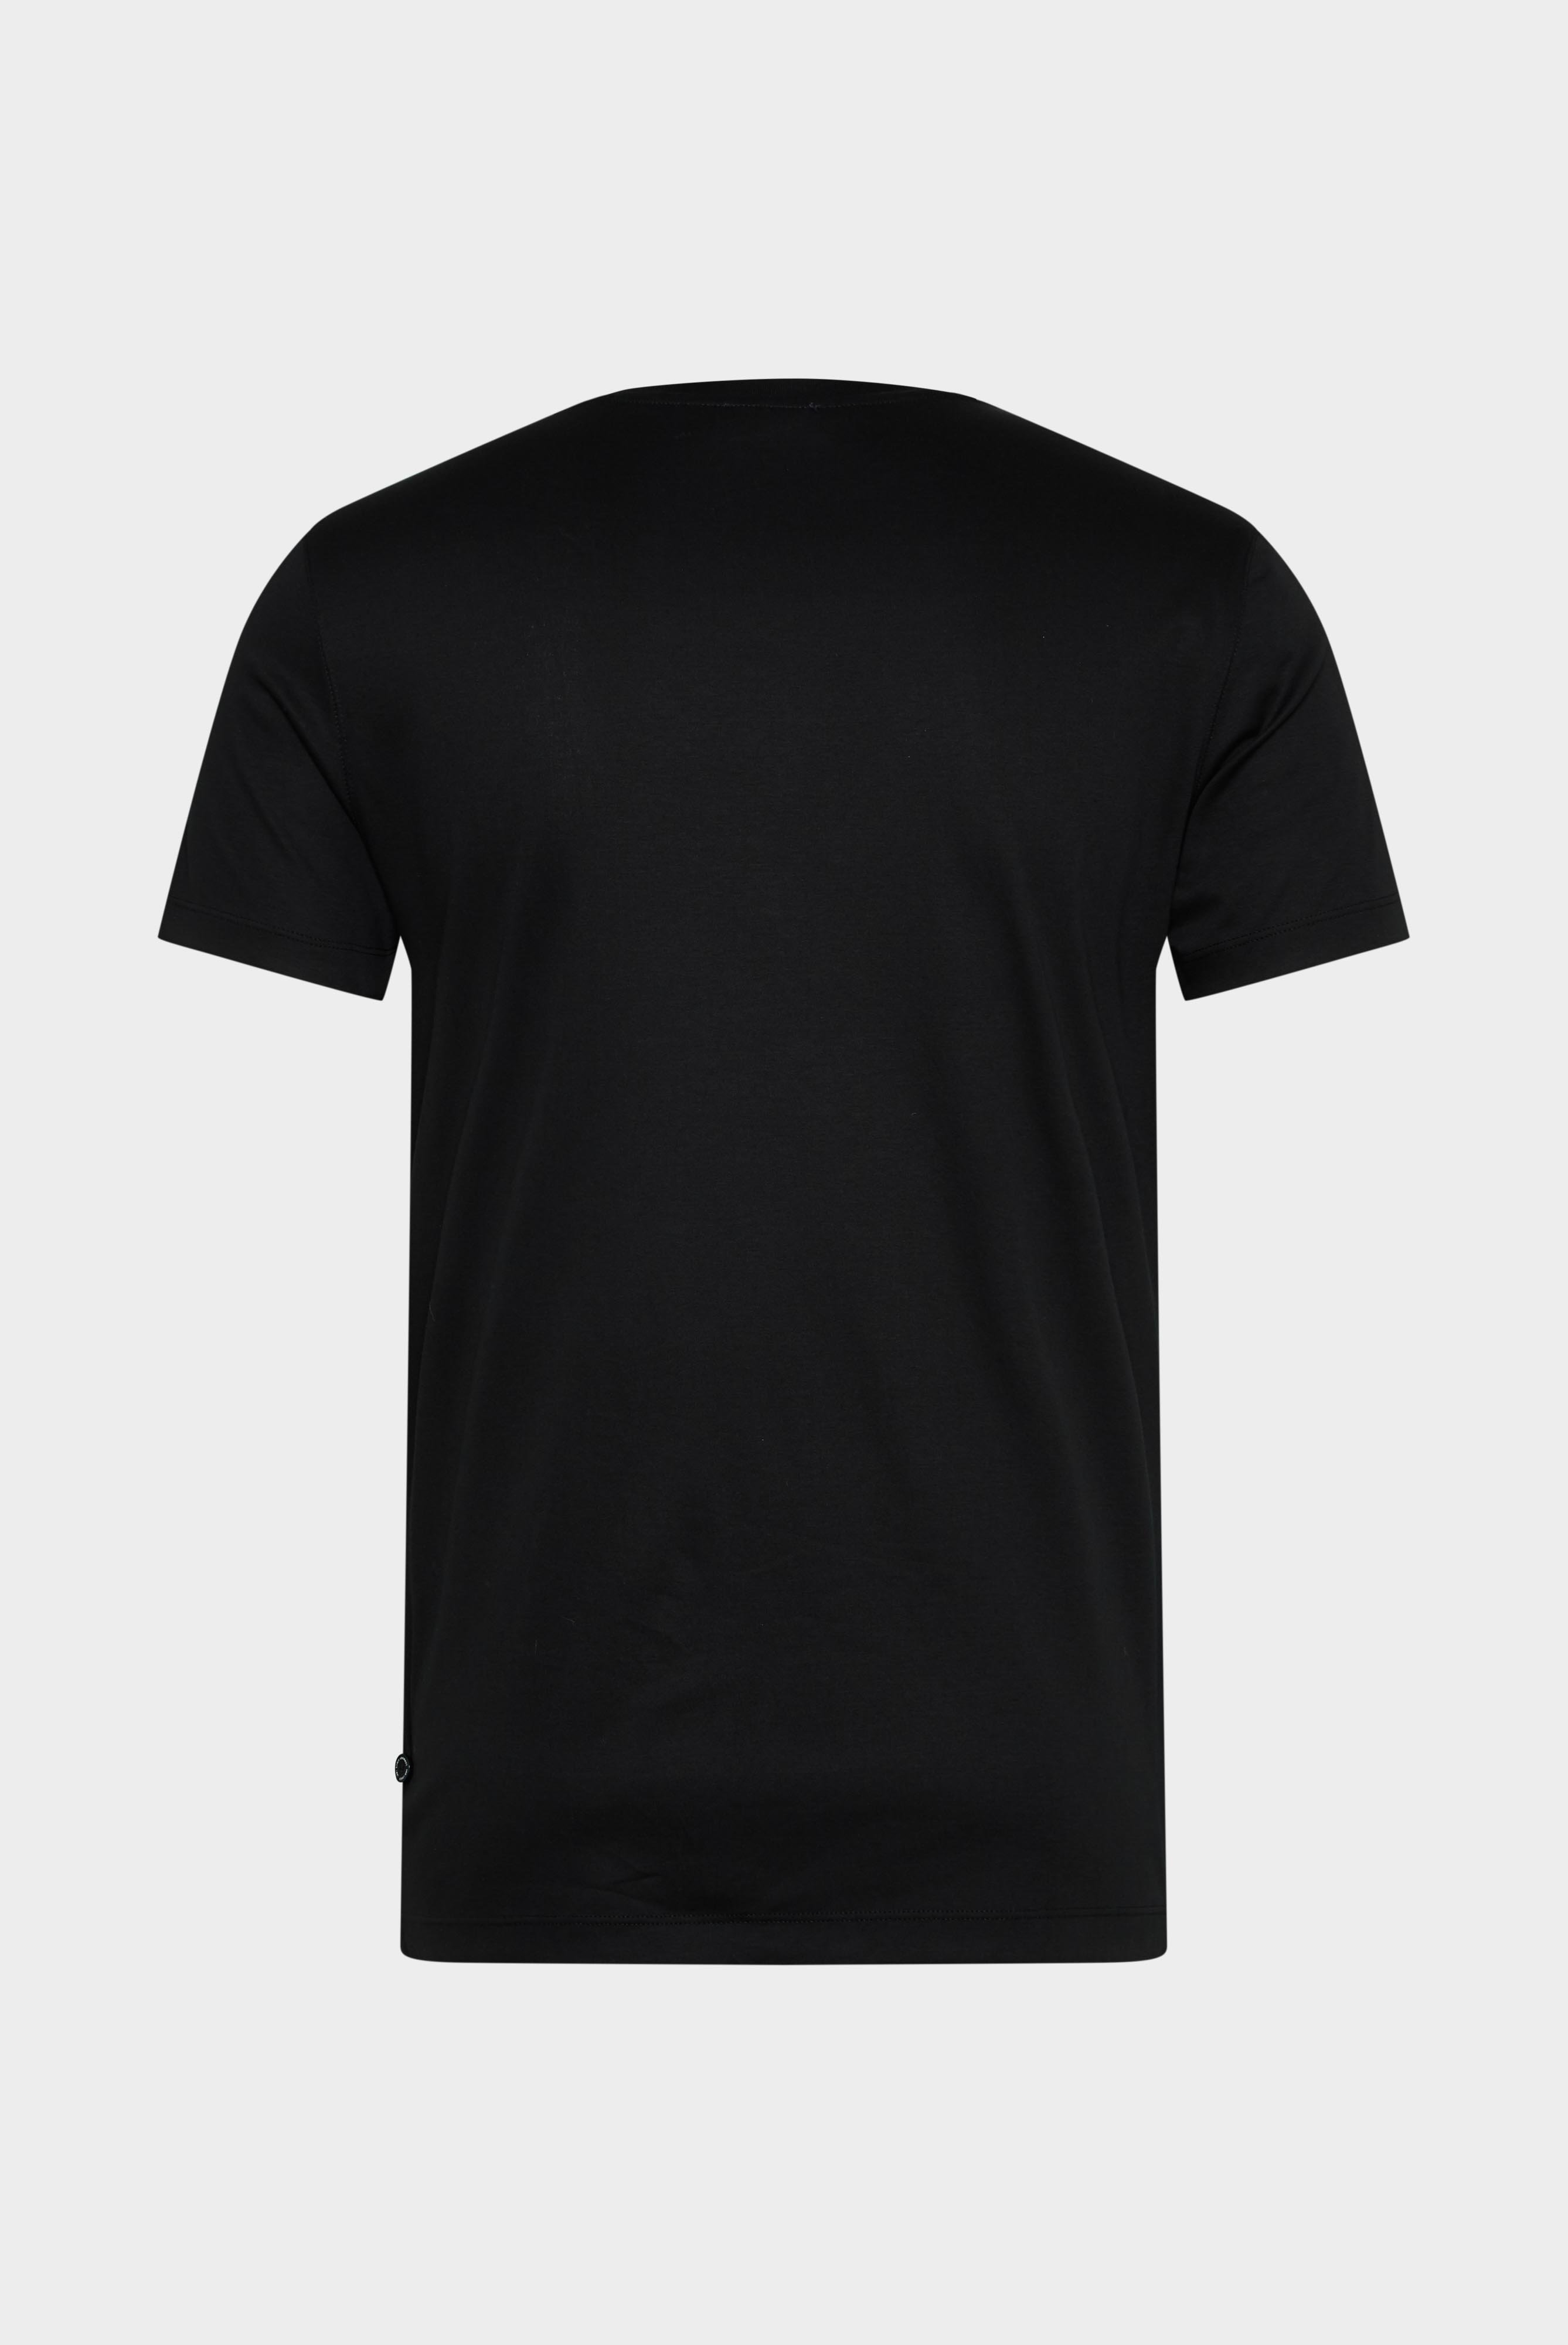 T-Shirts+V-Ausschnitt Jersey T-Shirt Slim Fit+20.1715.UX.180031.099.S